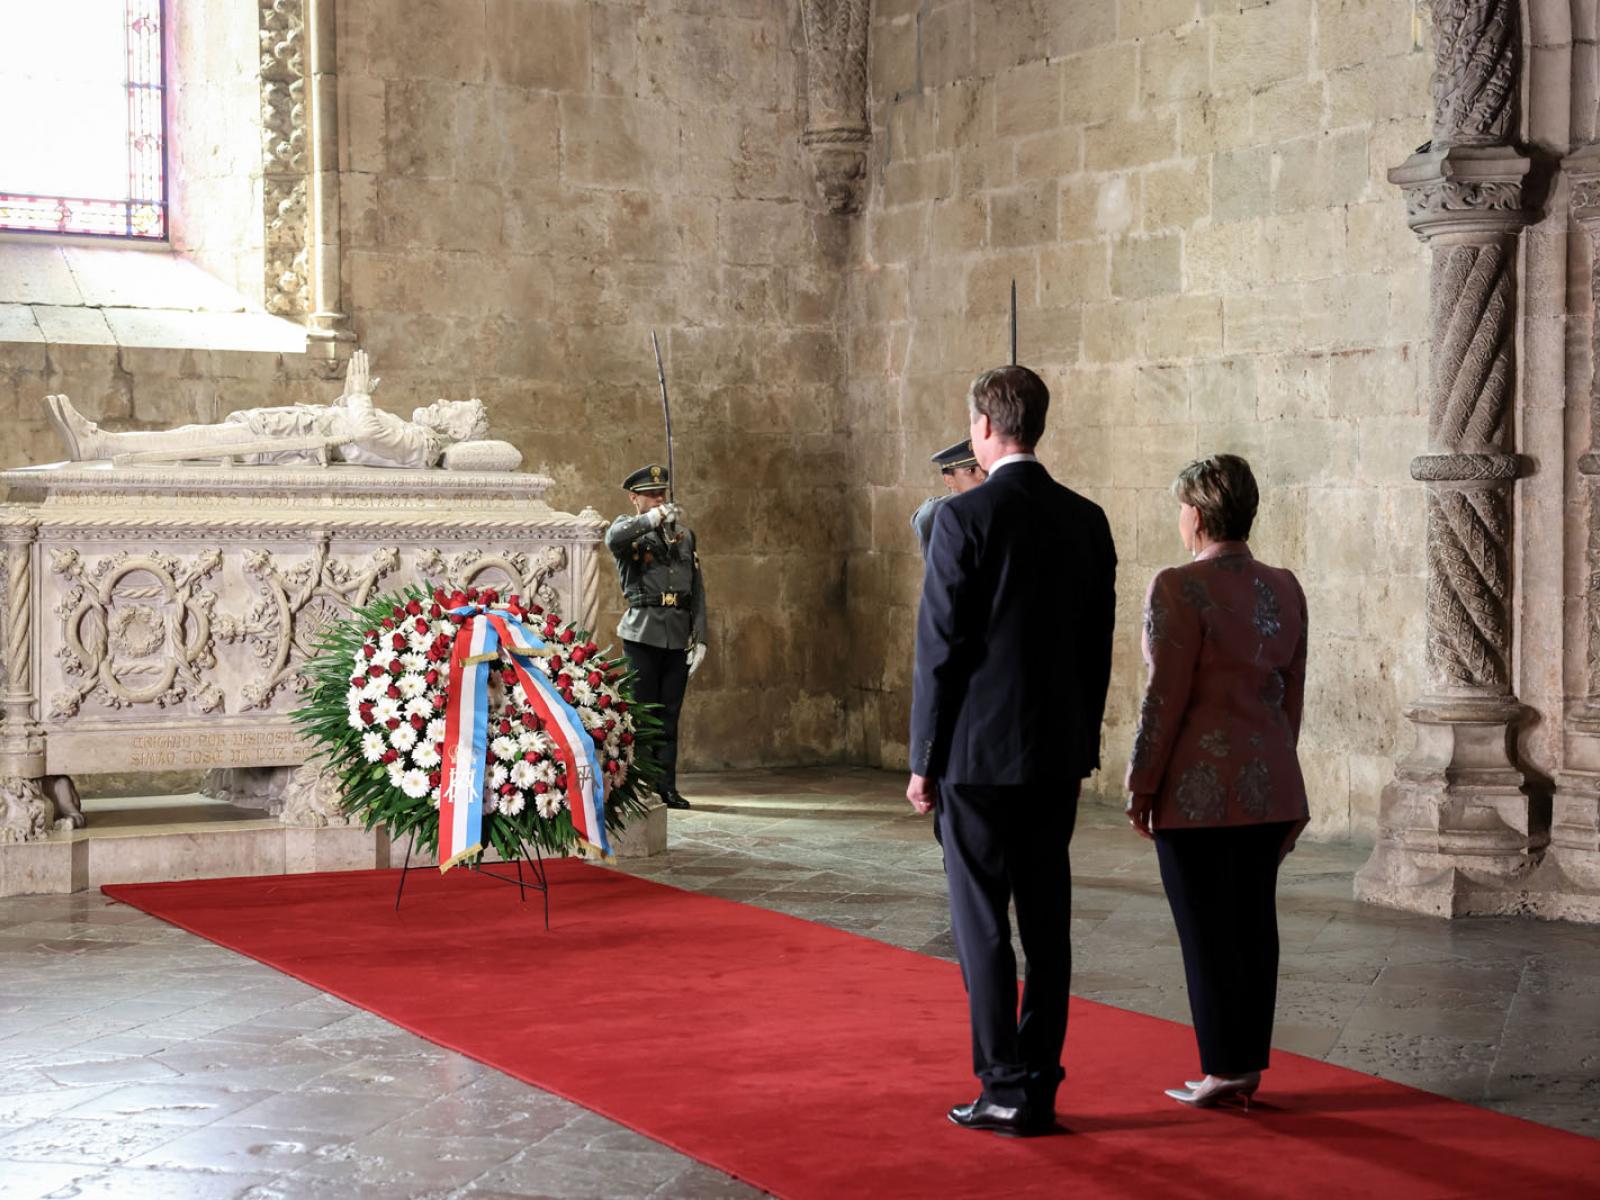 Le Couple grand-ducal rend hommage au poète portugais